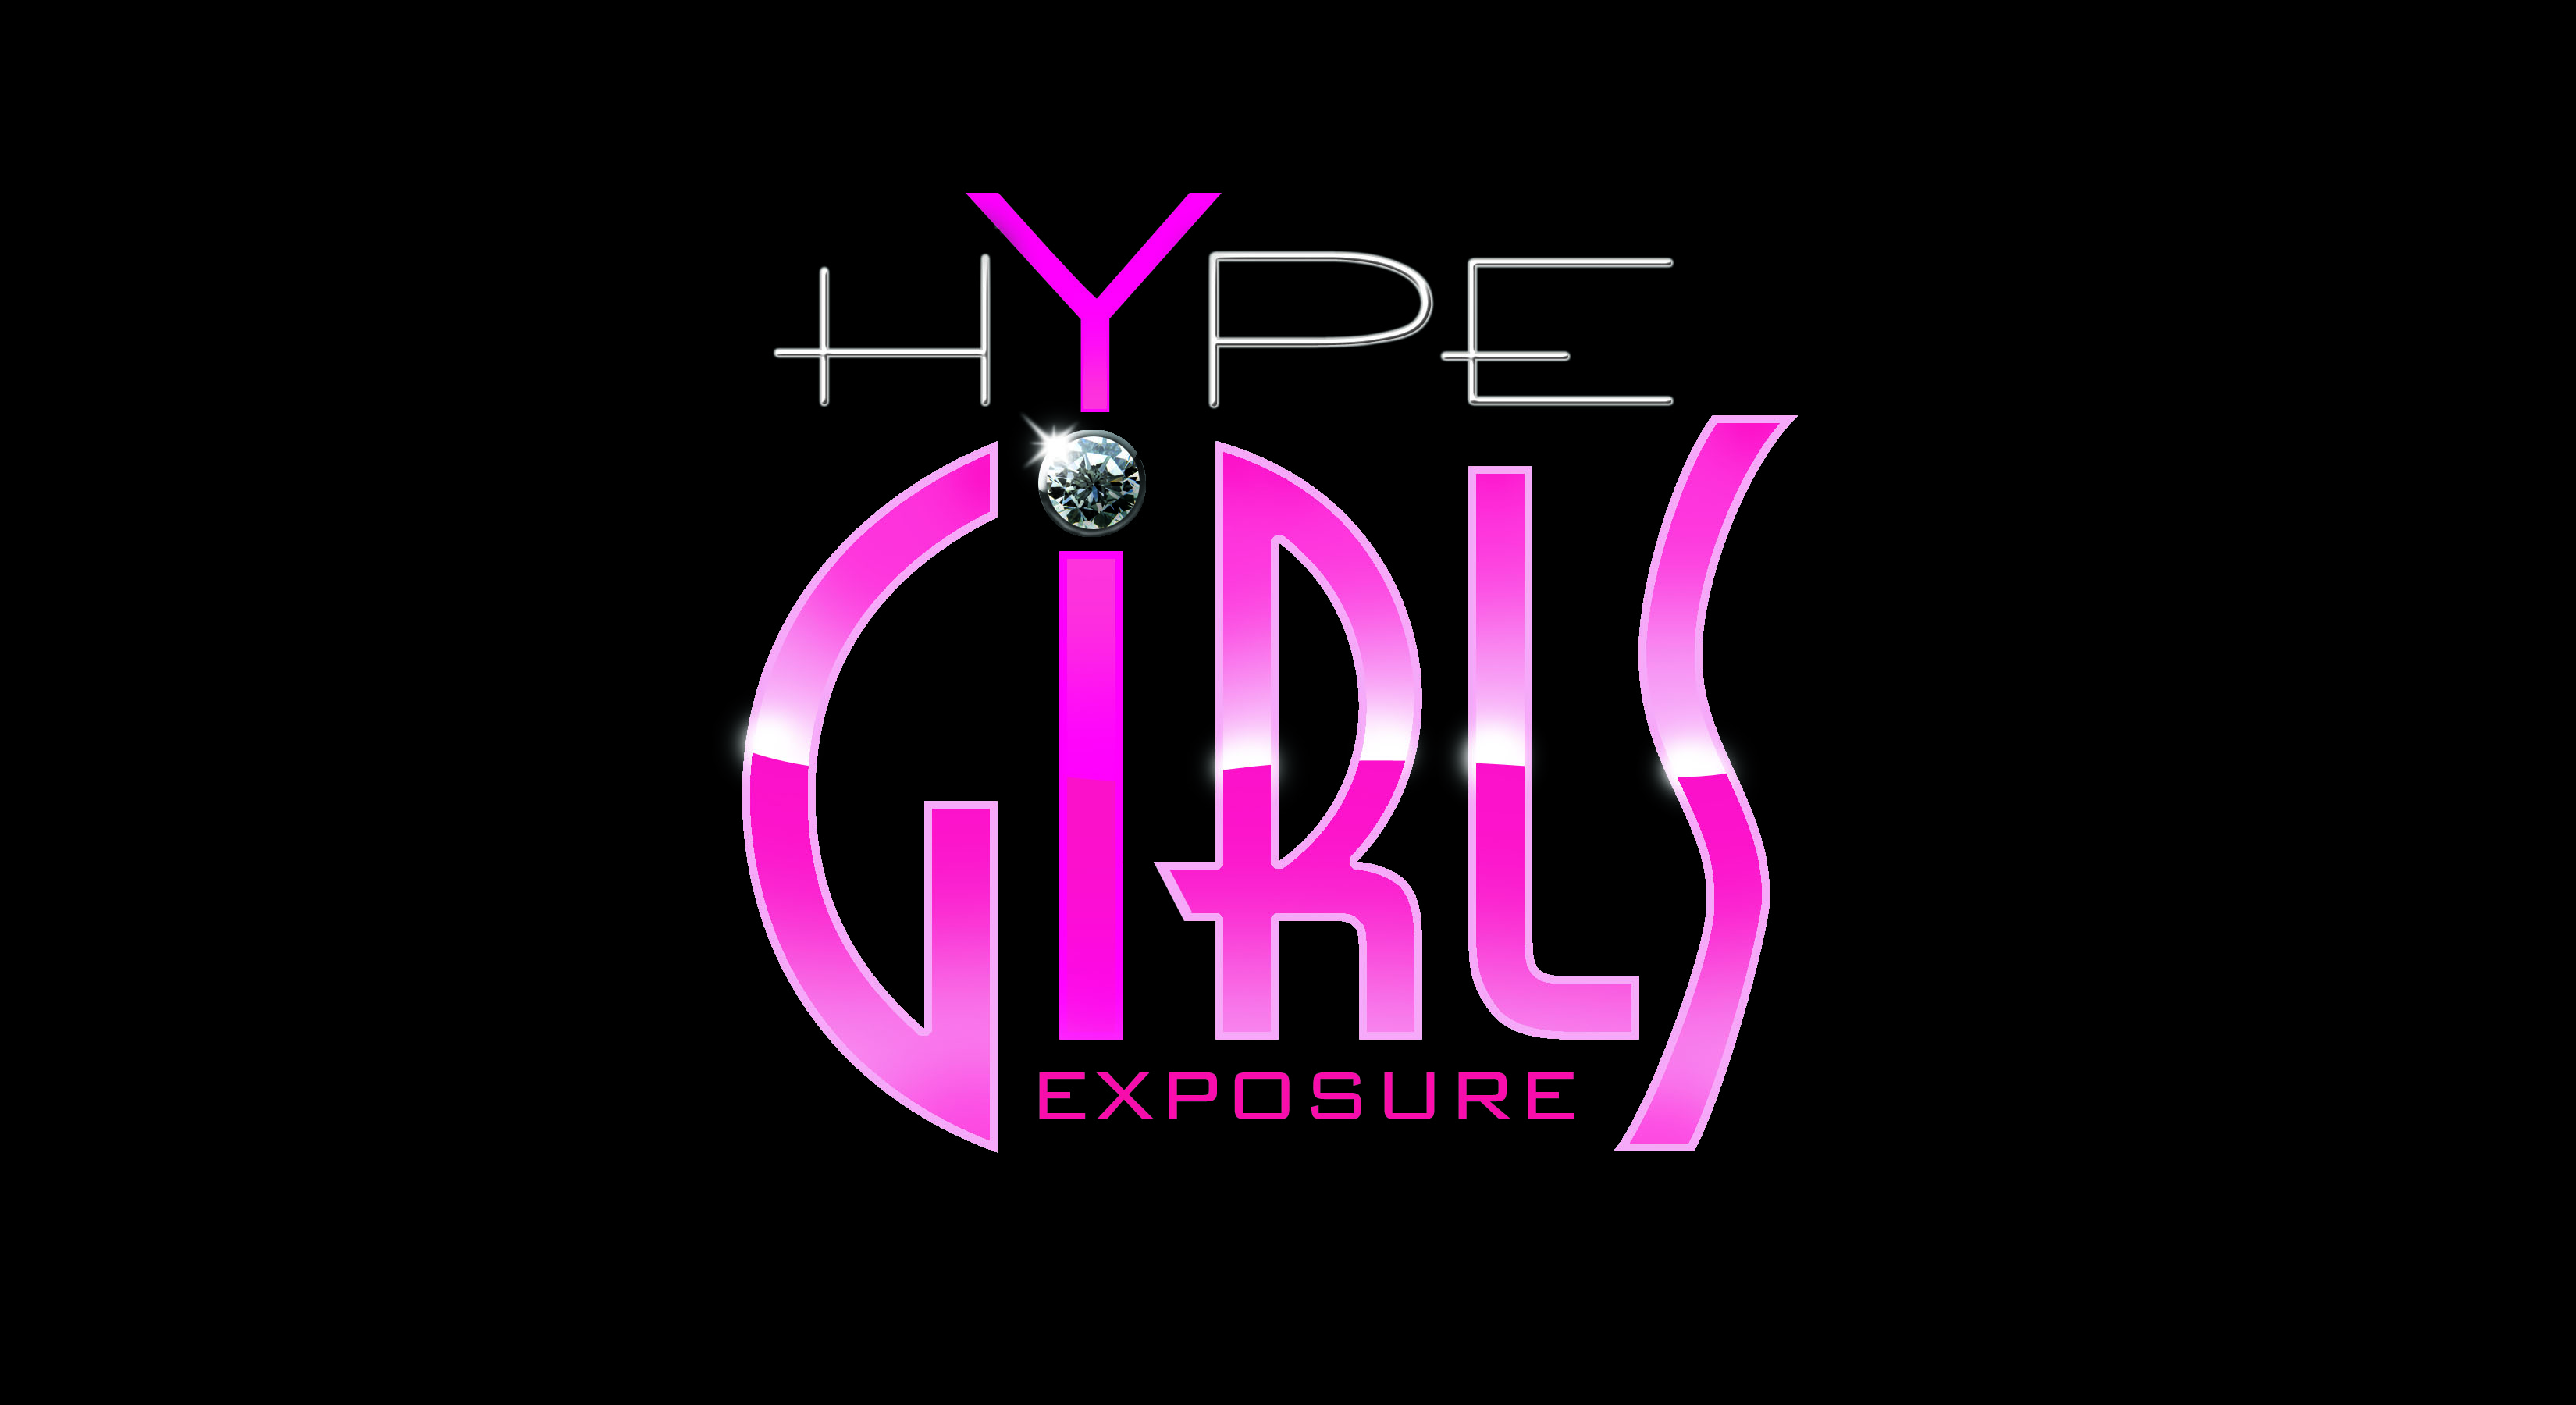 girls hype house logo